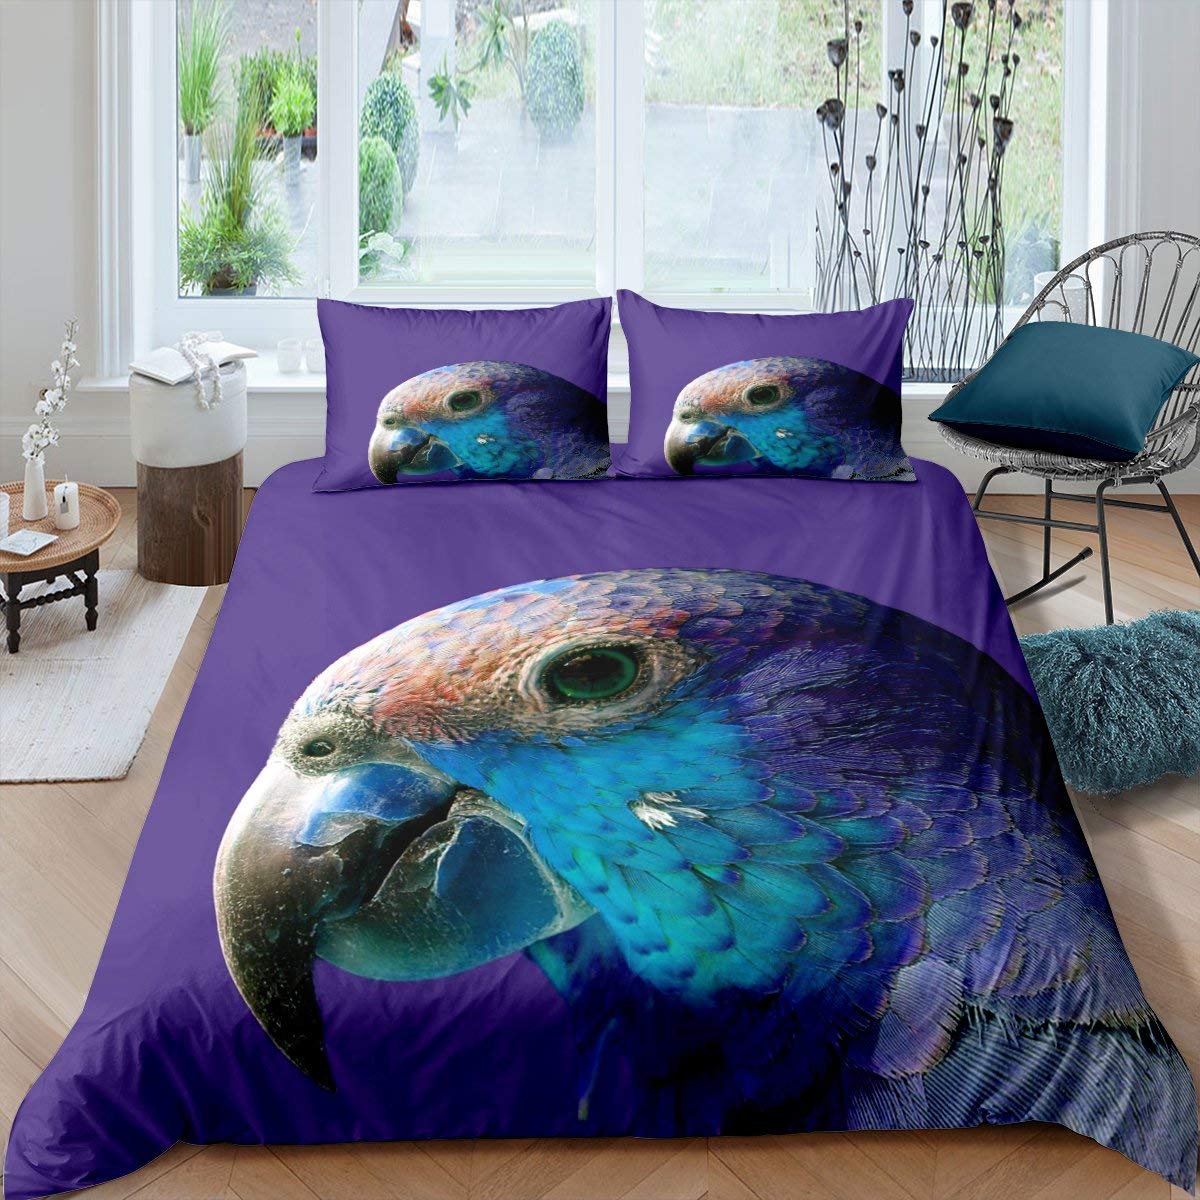 Purple parrot duvet cover